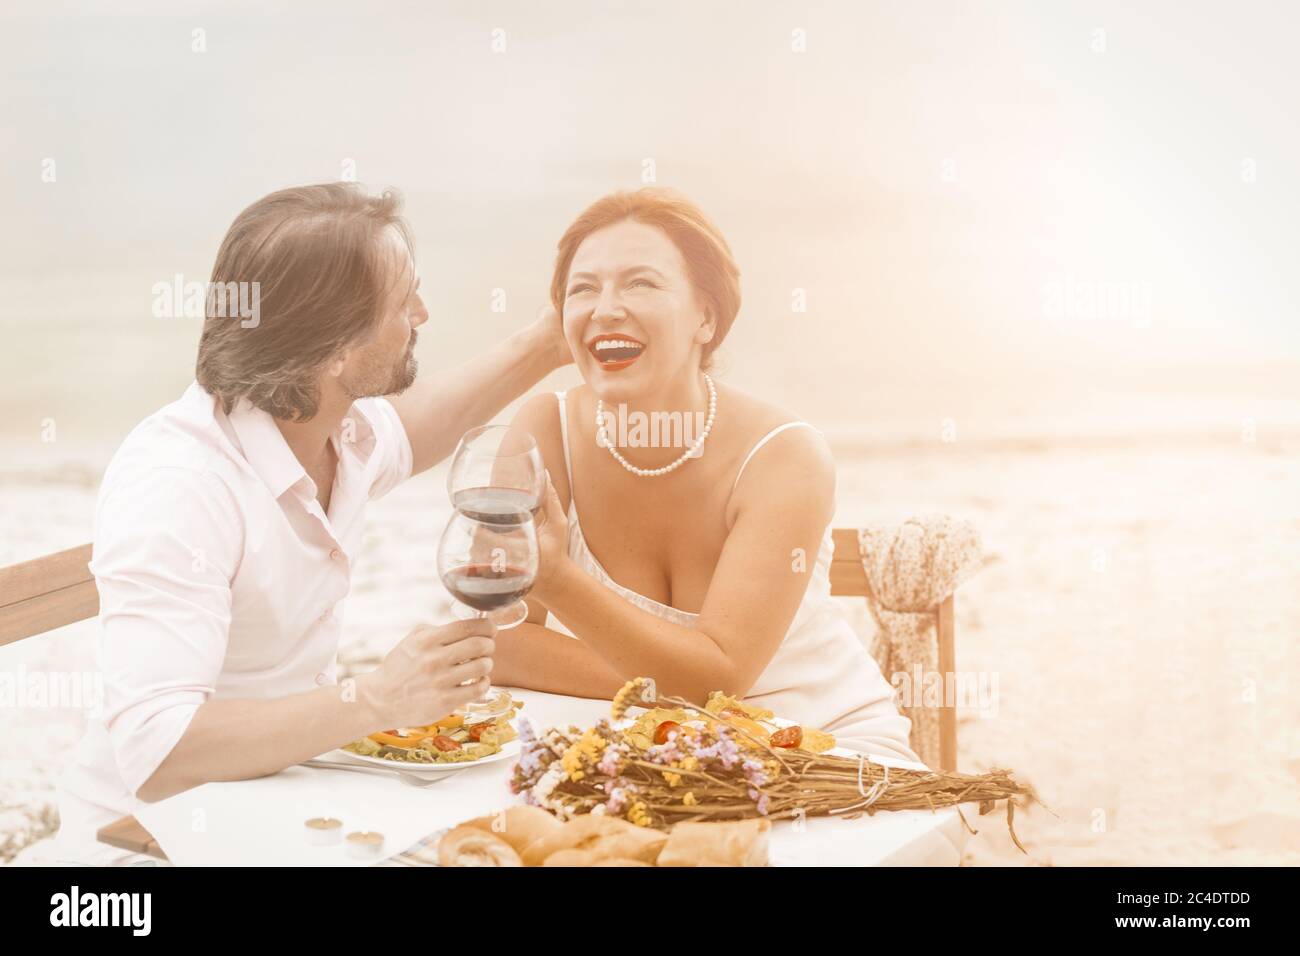 Felice uomo maturo e donna ride bere vino all'aperto. Una coppia innamorata riposa insieme al Coast cafe. Immagine colorata Foto Stock